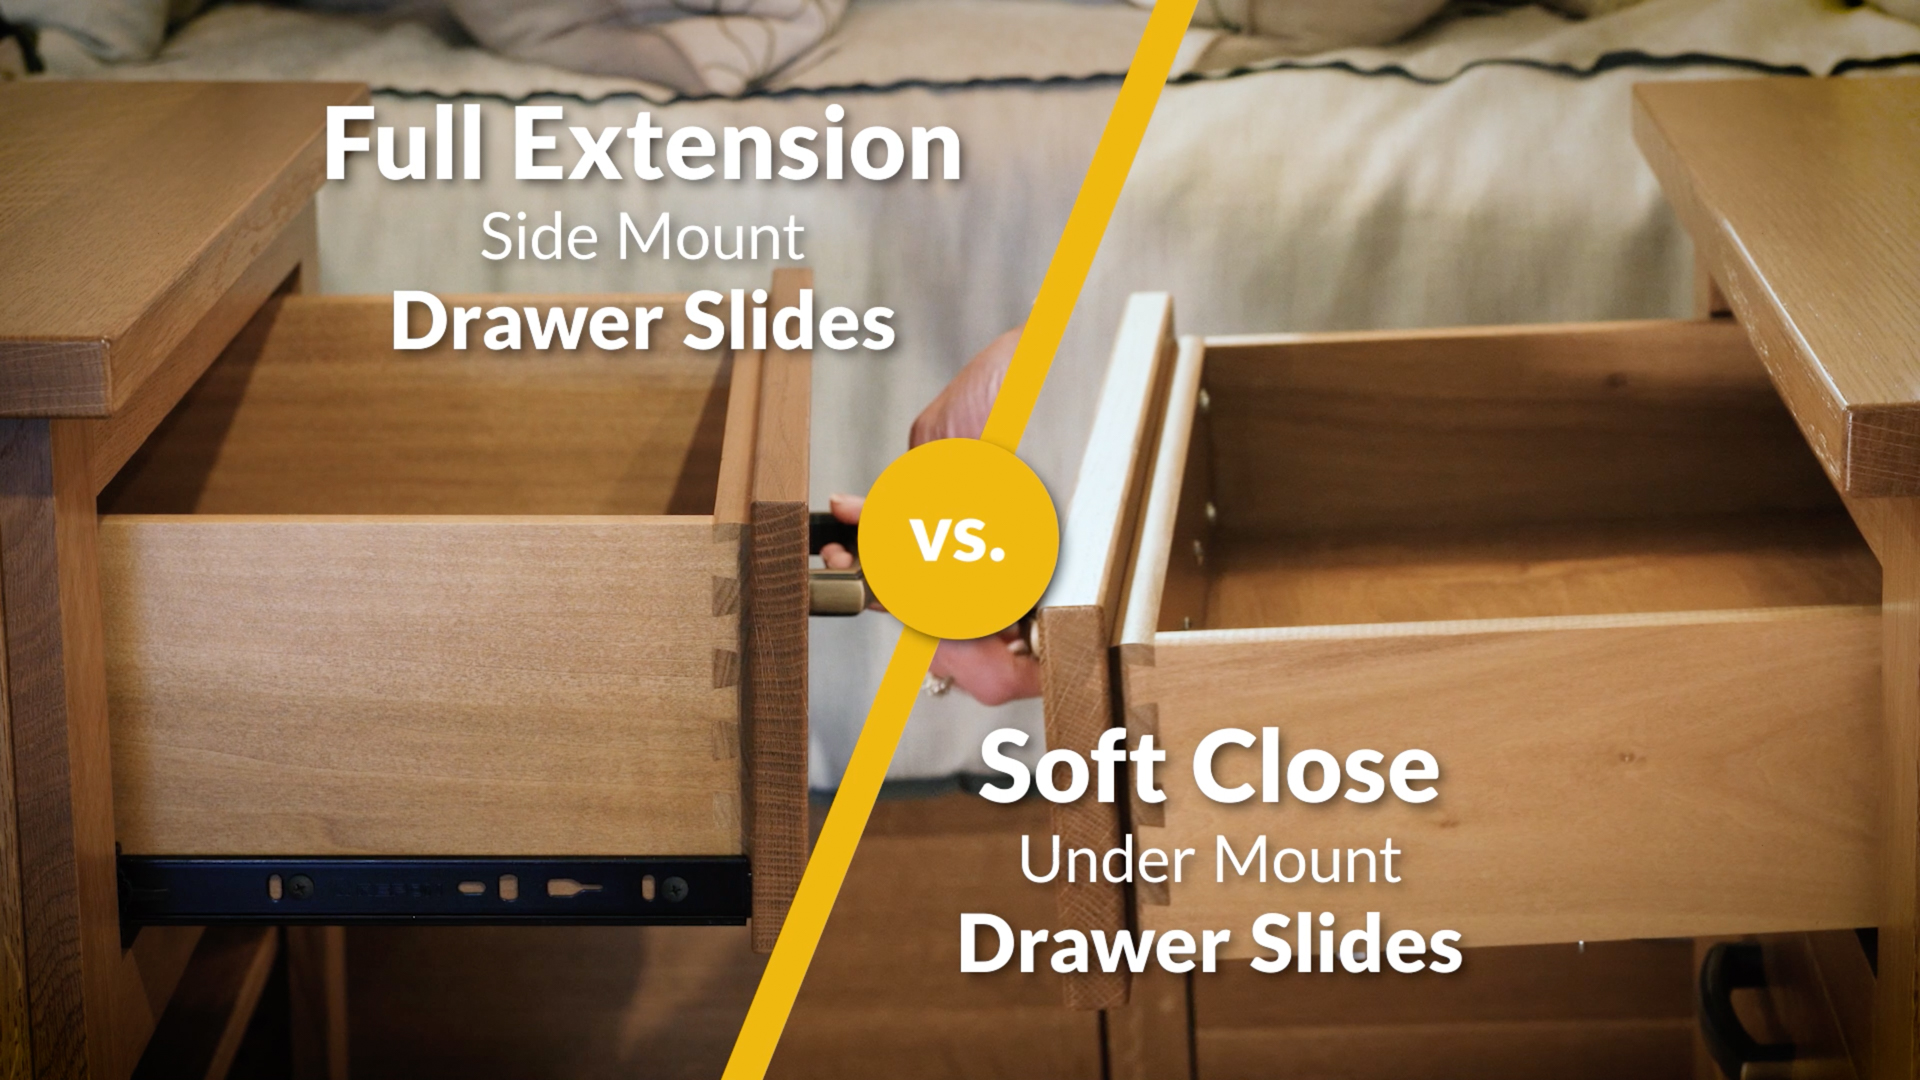 Full Extension Drawer Slides vs. Soft Close Under Mount Drawer Slides video thumbnail